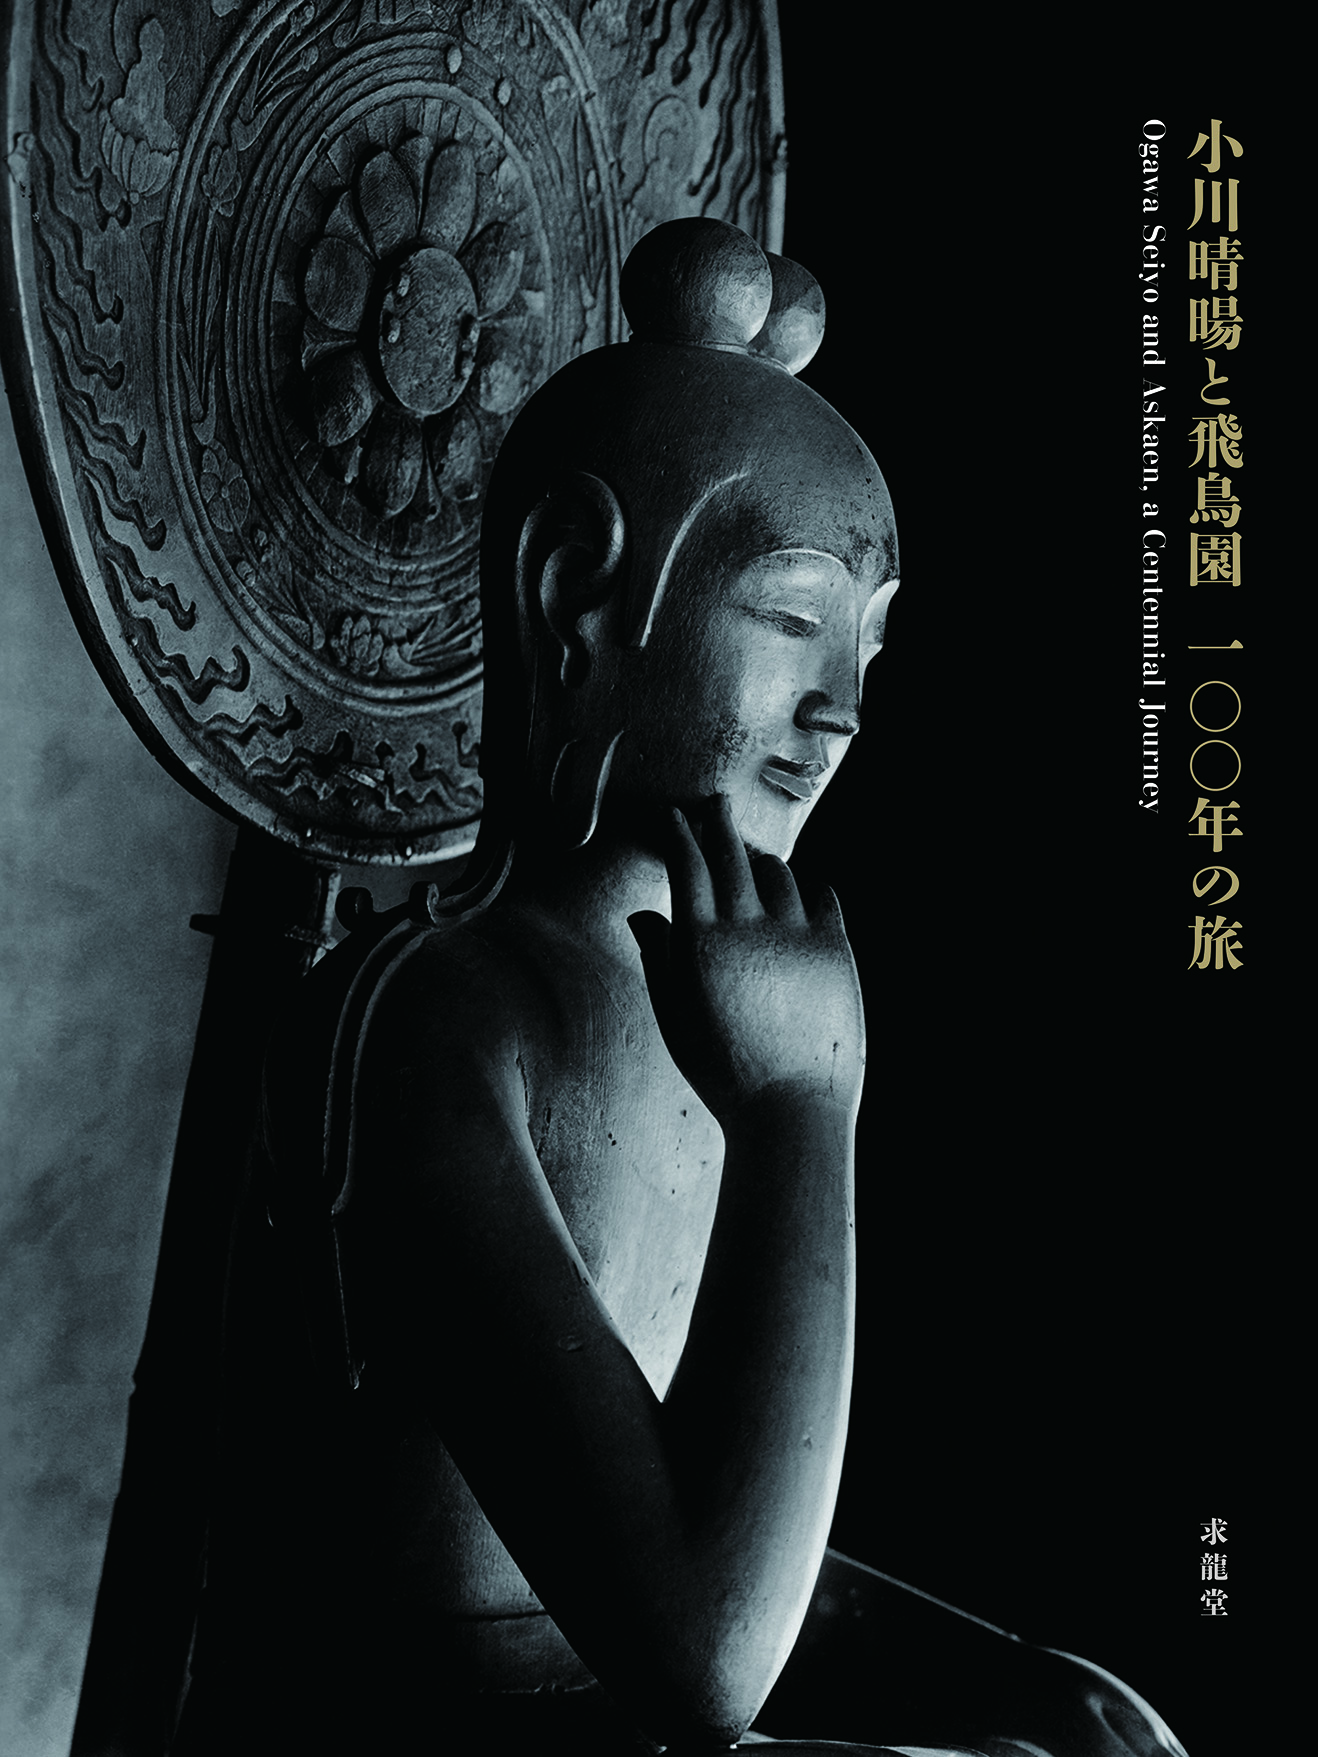 小川晴暘,仏像,飛鳥園,奈良県立美術館,巡回展